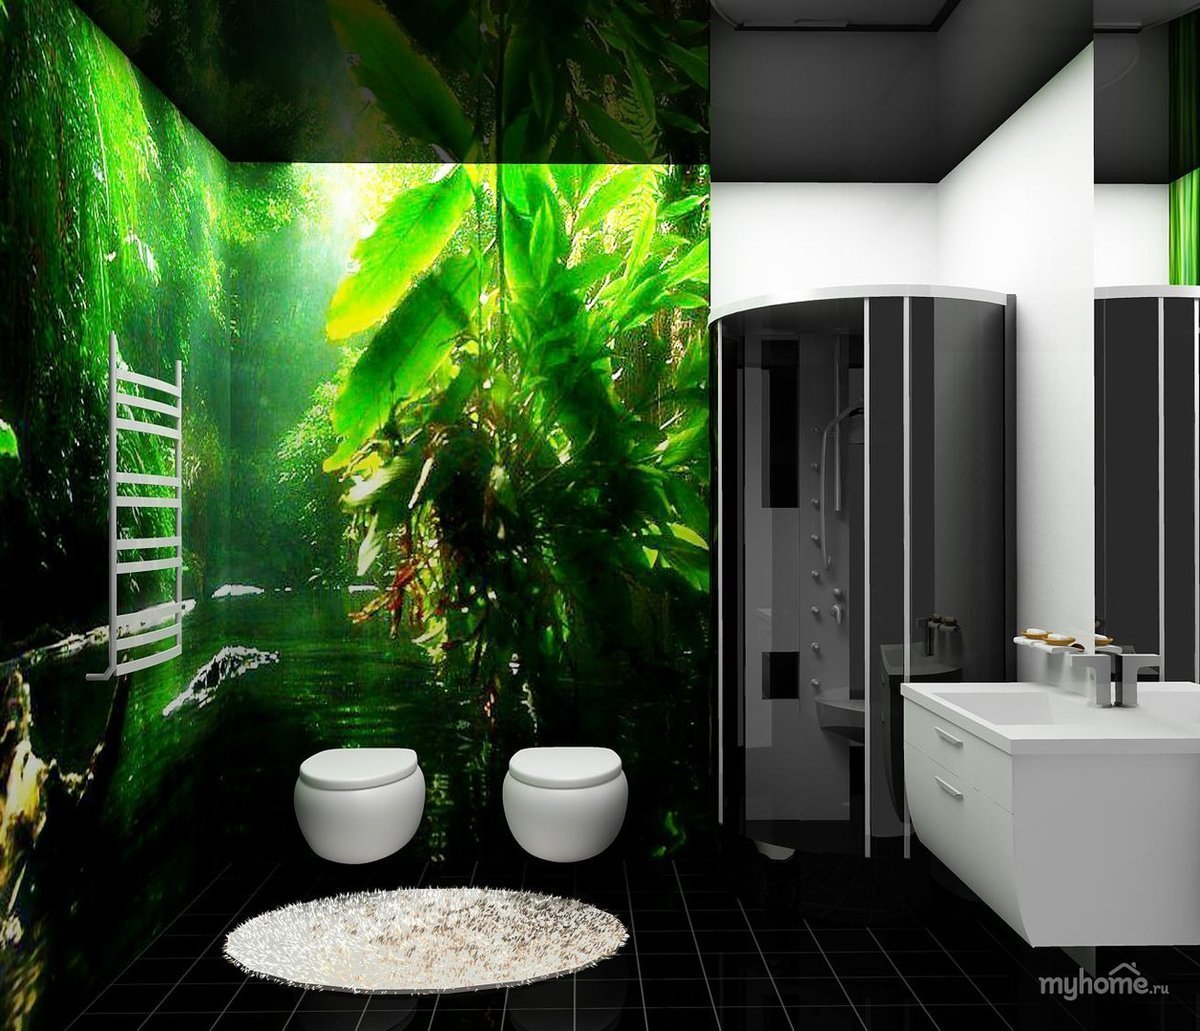 Ванна фотообои. Ванная в зеленом цвете. Фотообои в интерьере ванной комнаты. Фотообои в туалете. Туалетная комната.